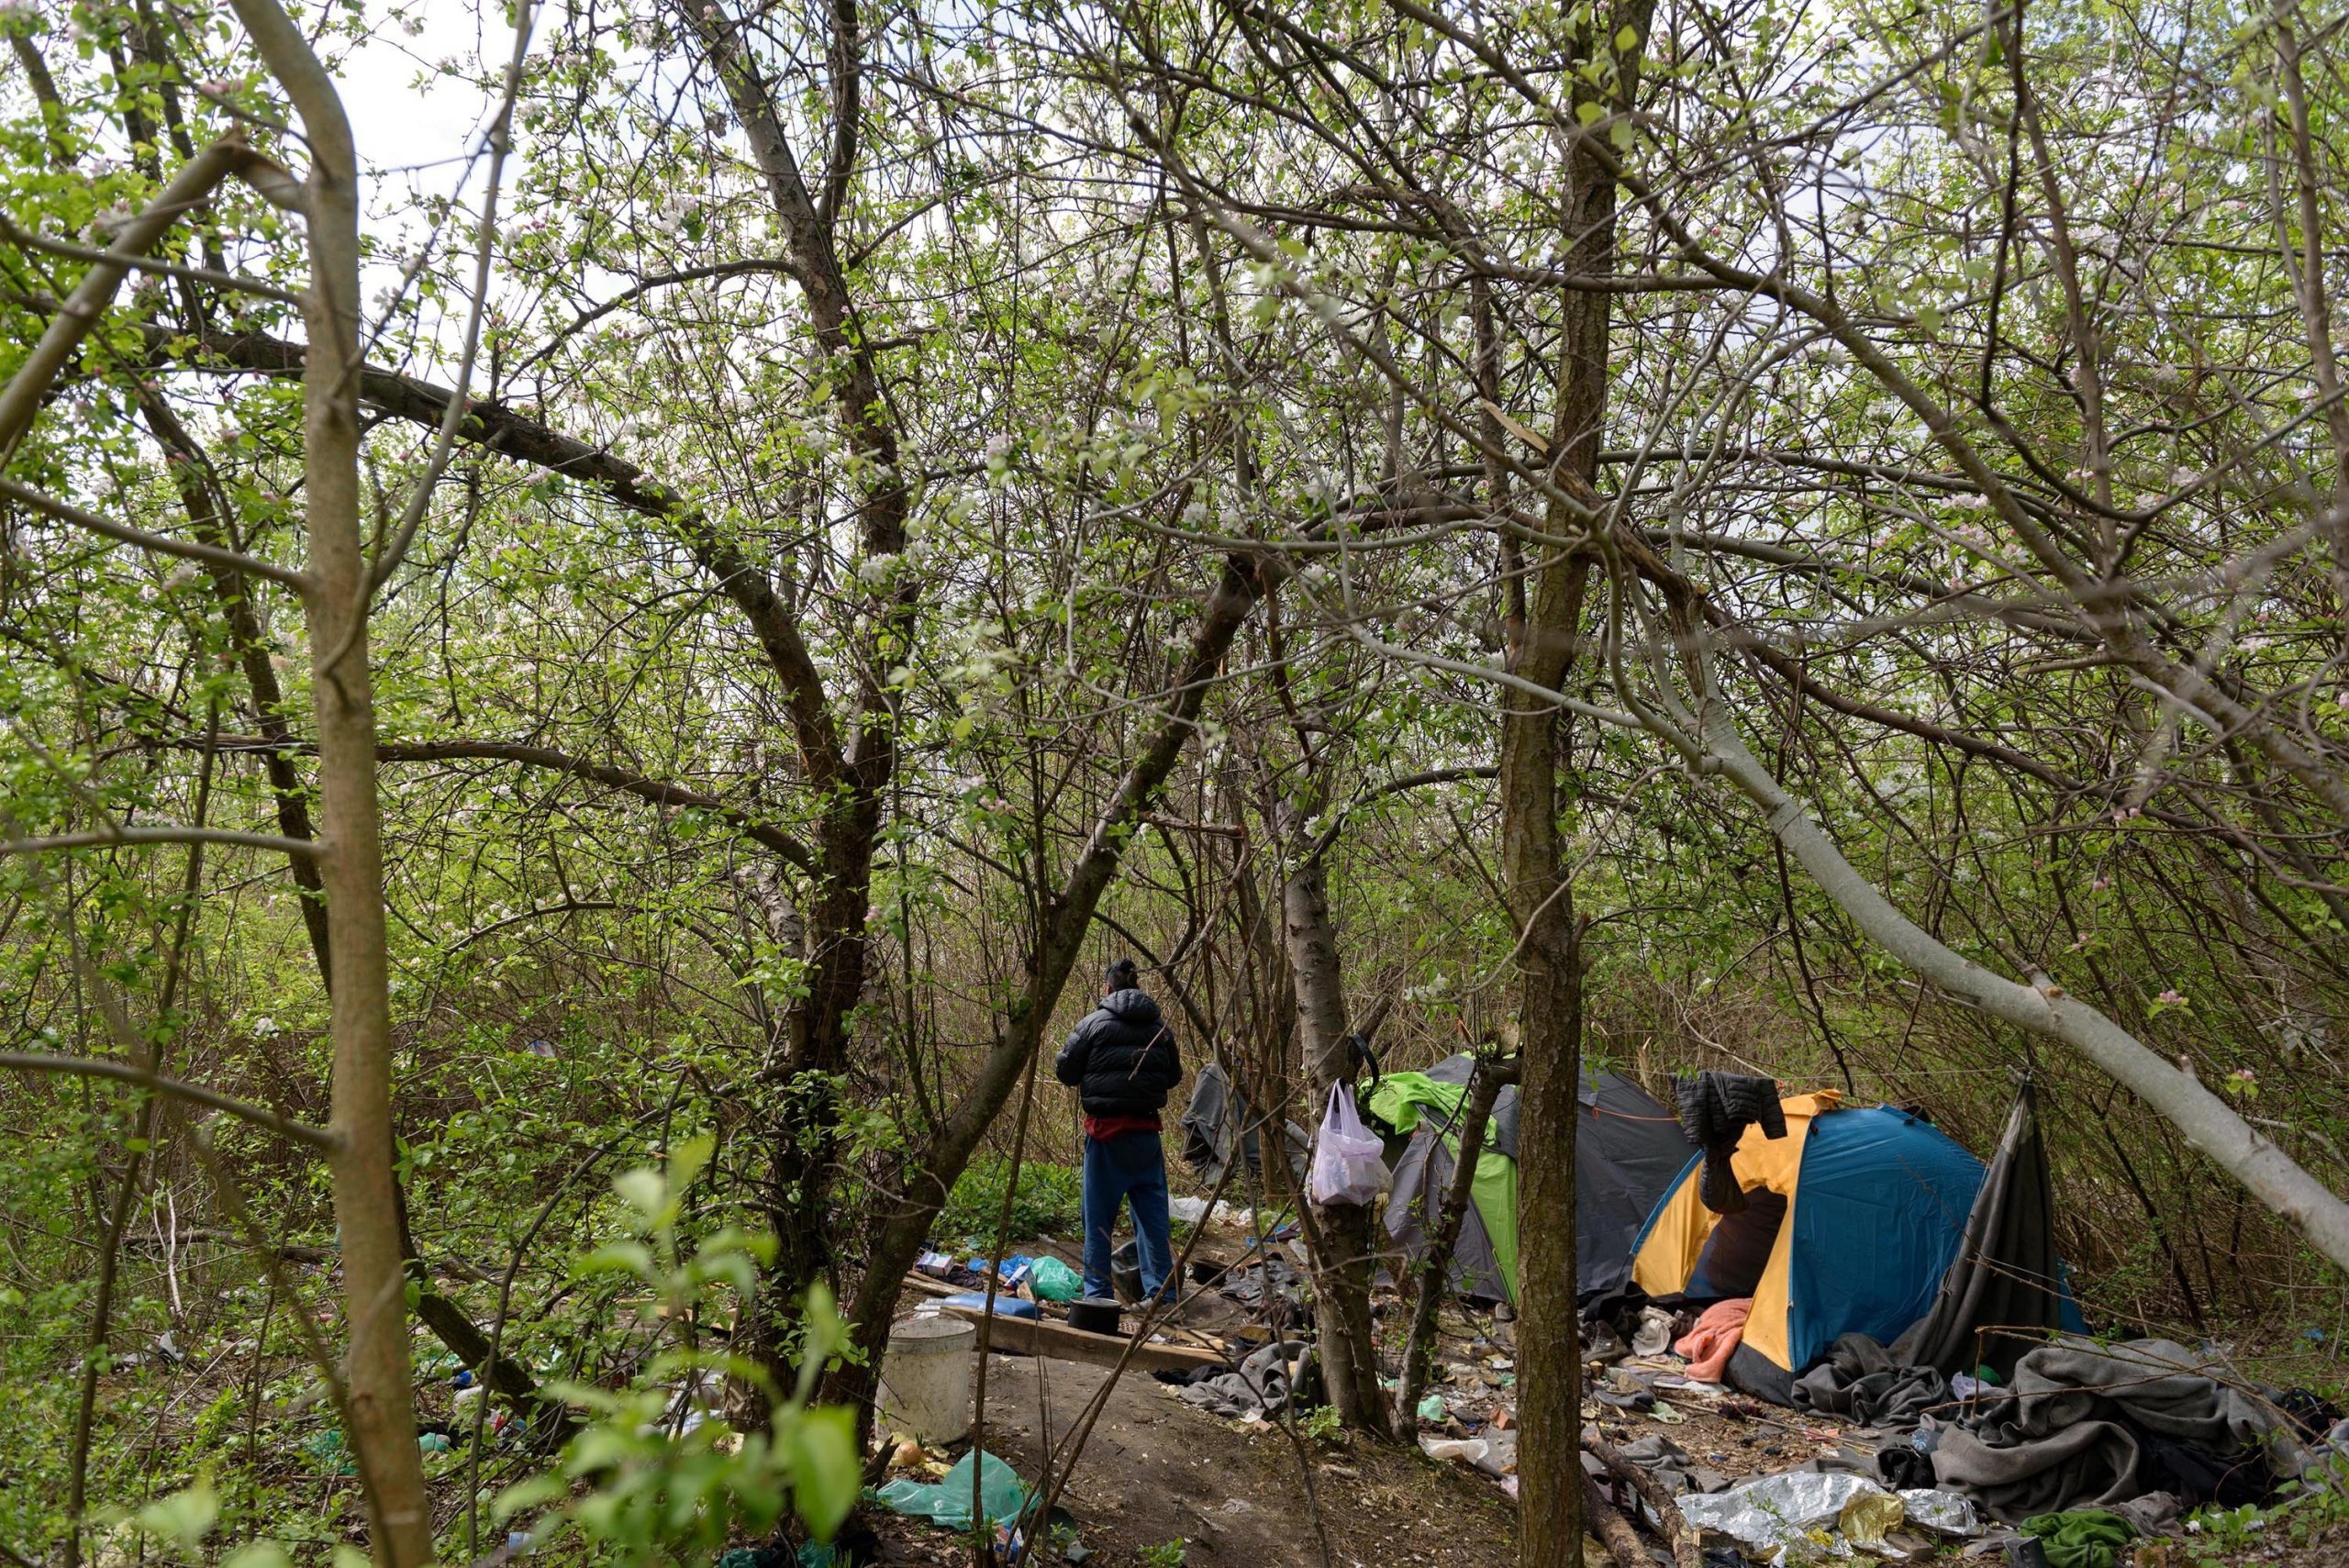 Konfrontation zwischen Migrantenbanden endet in Blutbad an serbisch-ungarischer Grenze